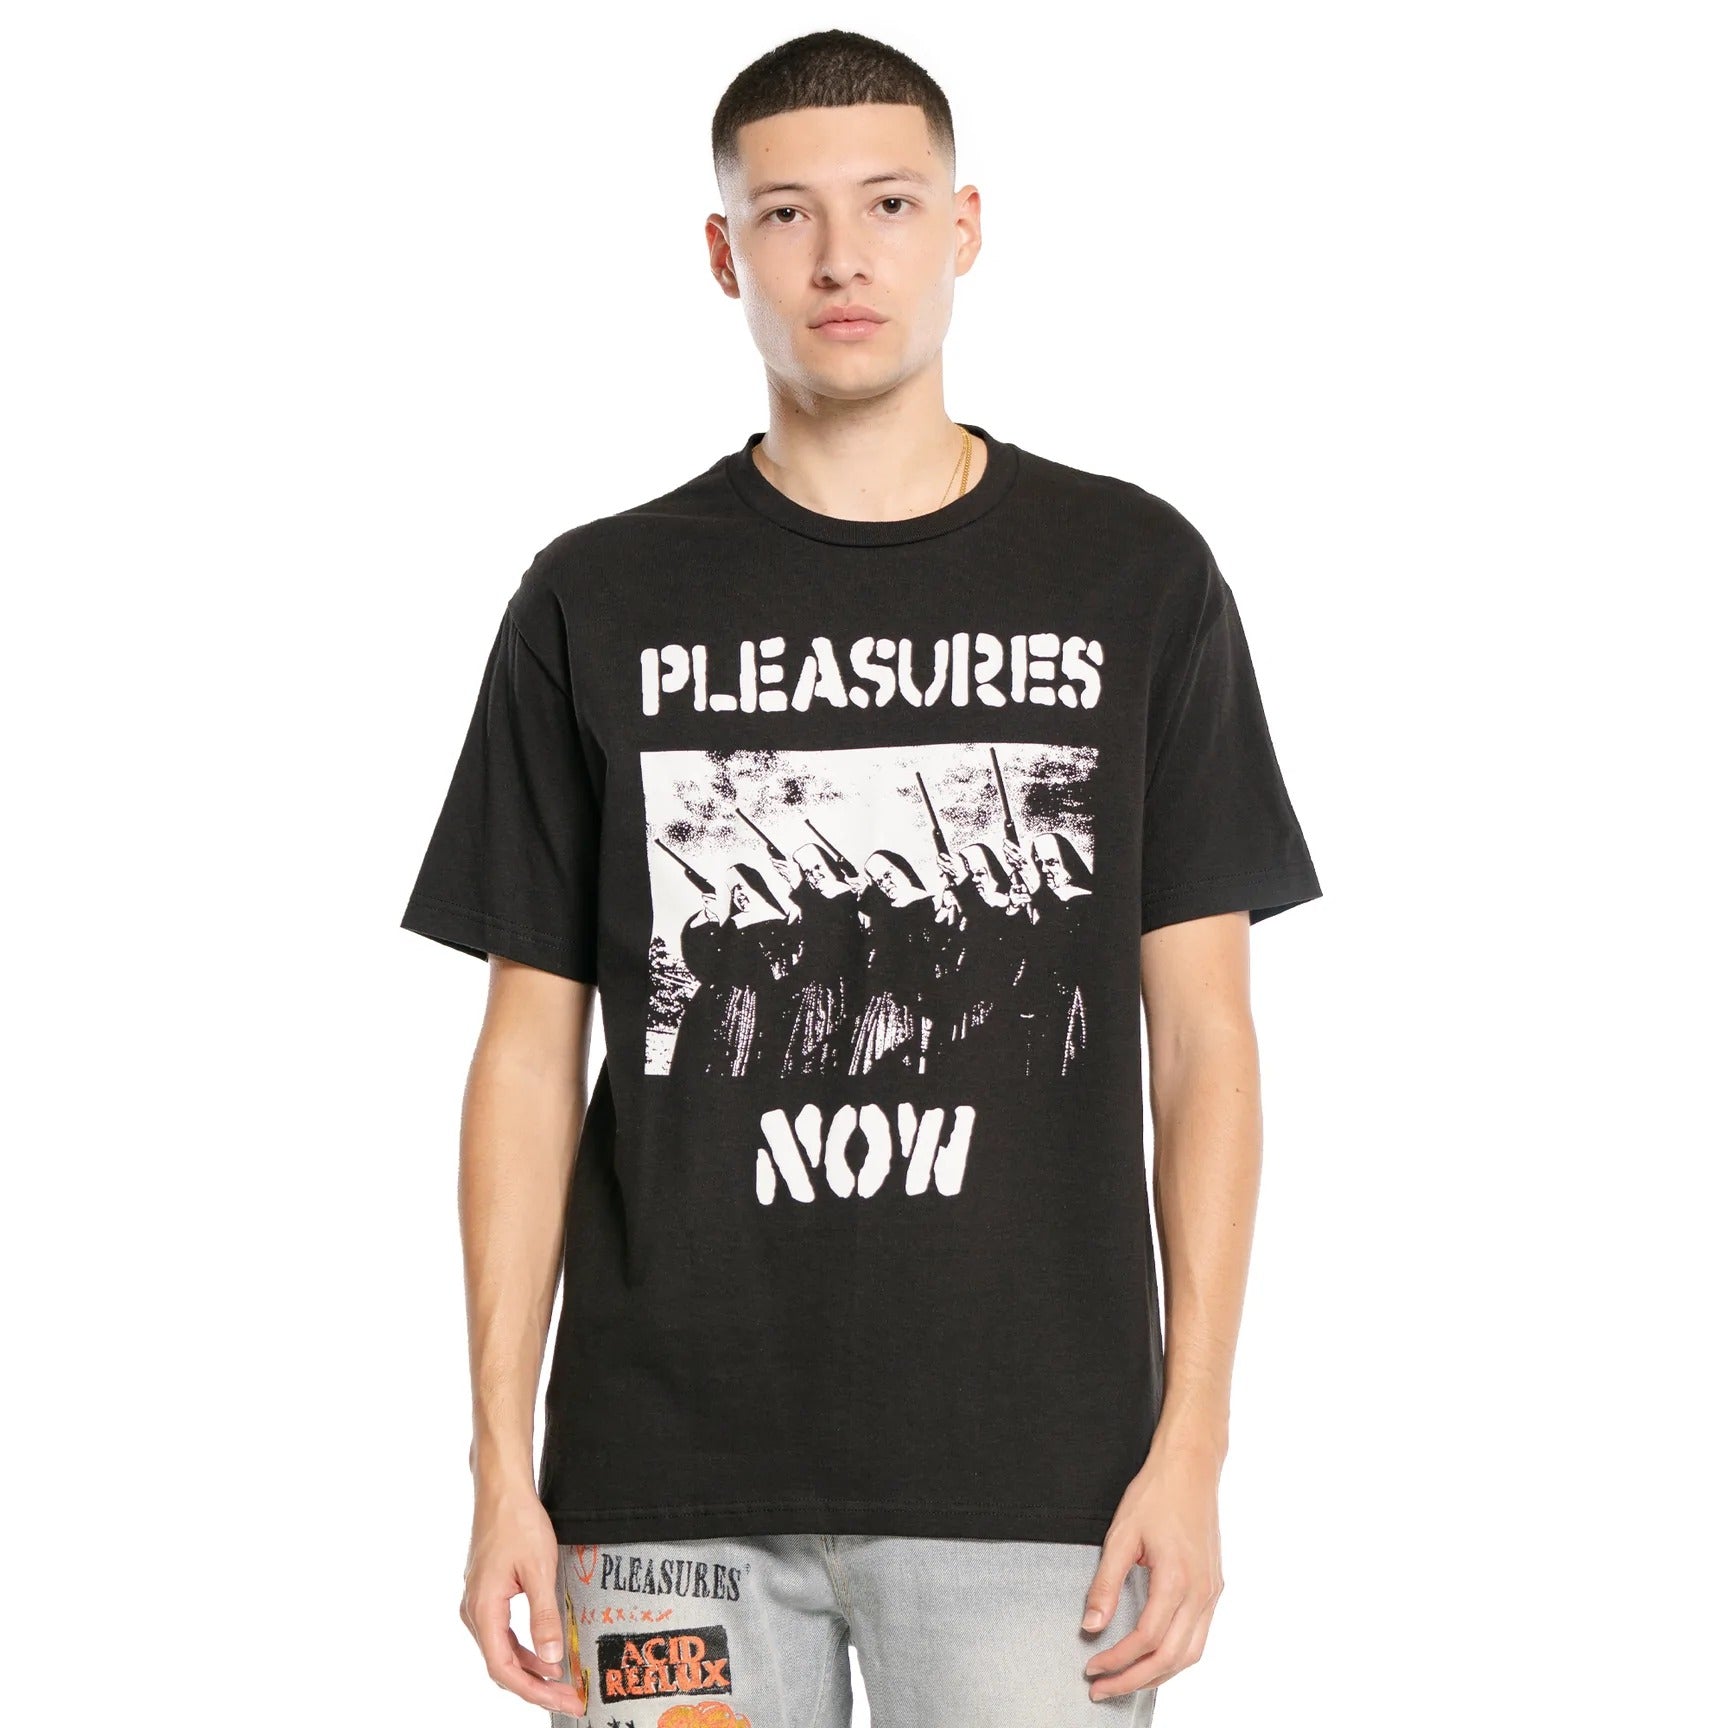 Pleasures Men Nuns T-Shirt Black - T-SHIRTS - Canada